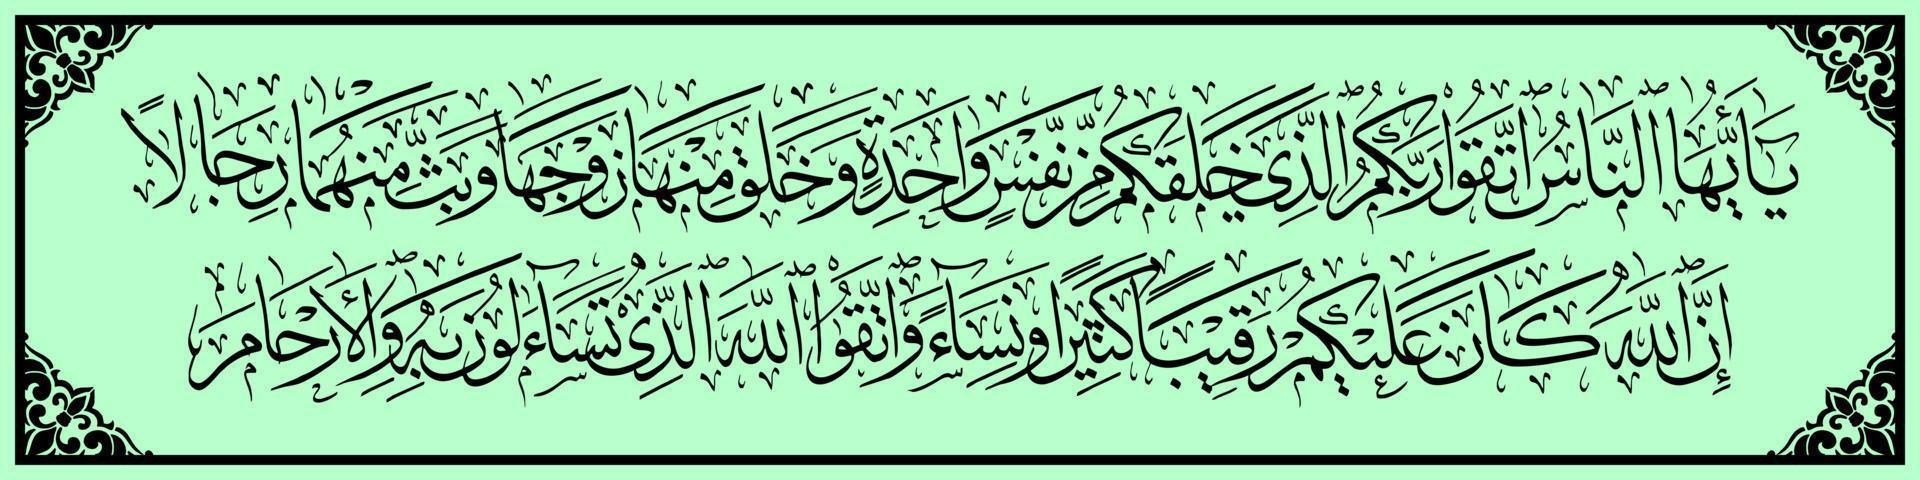 caligrafia árabe, al qur'an surah an nisa 1, tradução o povo teme seu senhor, que o criou de um adão, e allah criou sua esposa eva de si mesmo, vetor